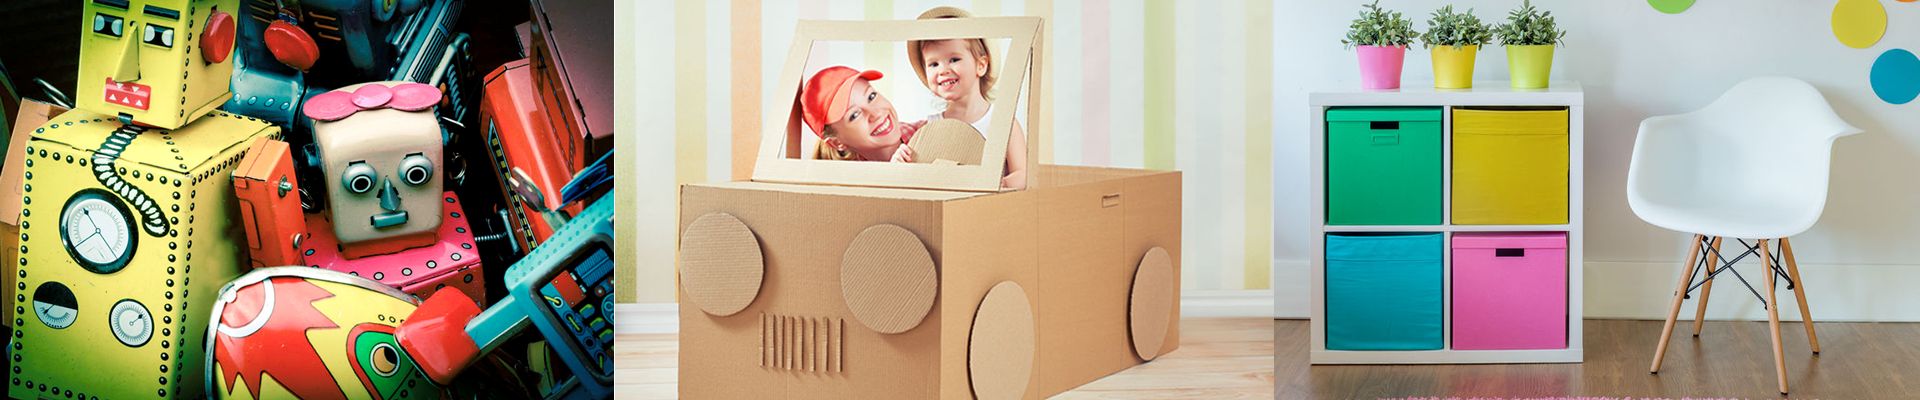 Children' Toy Boxes & Storage